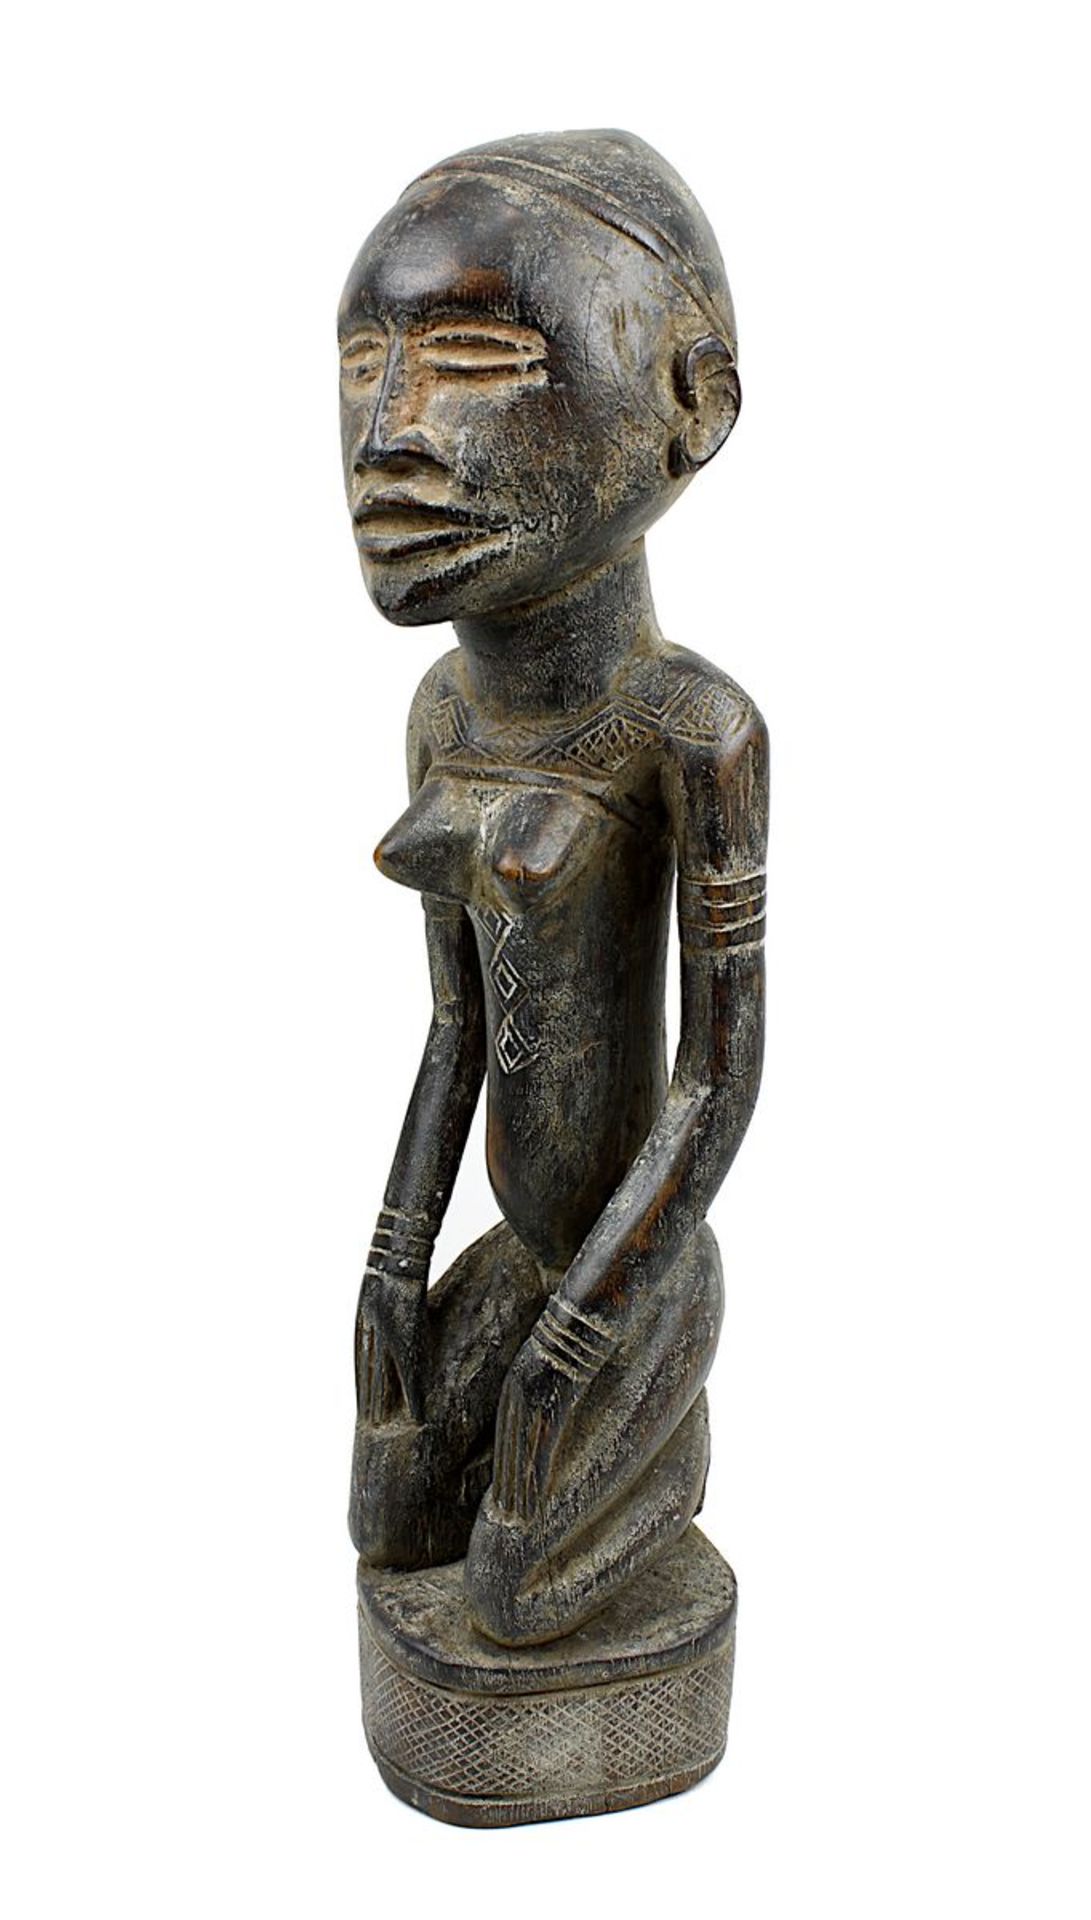 Kniende weibliche Figur wohl der Yombe, D. R. Kongo, schweres Holz geschnitzt und mit Resten von